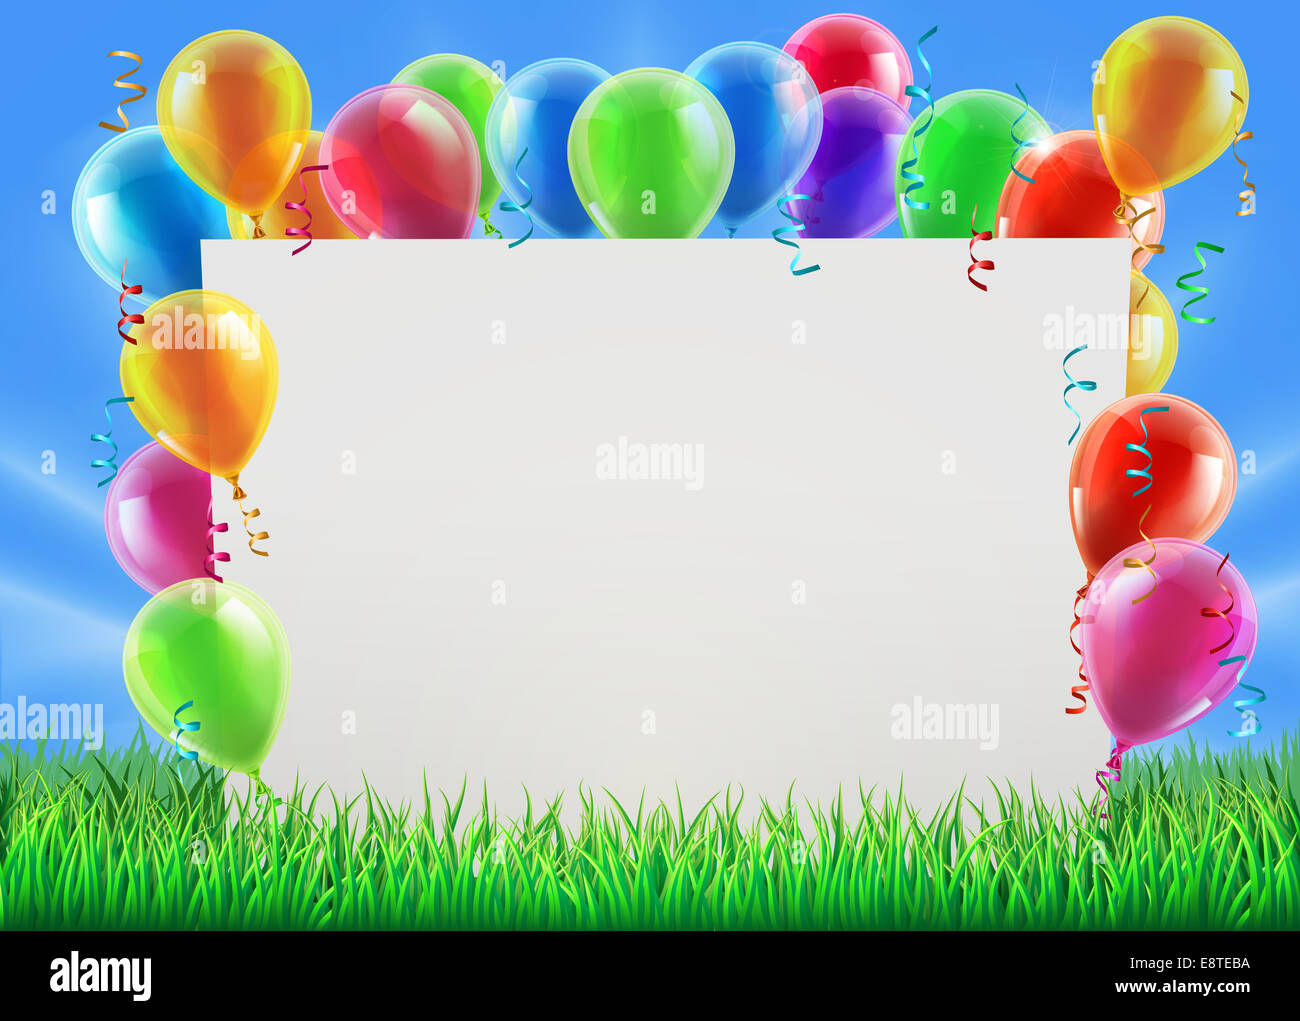 Une illustration d'un signe parti entouré de ballons dans un champ par un beau jour de printemps ou d'été Banque D'Images